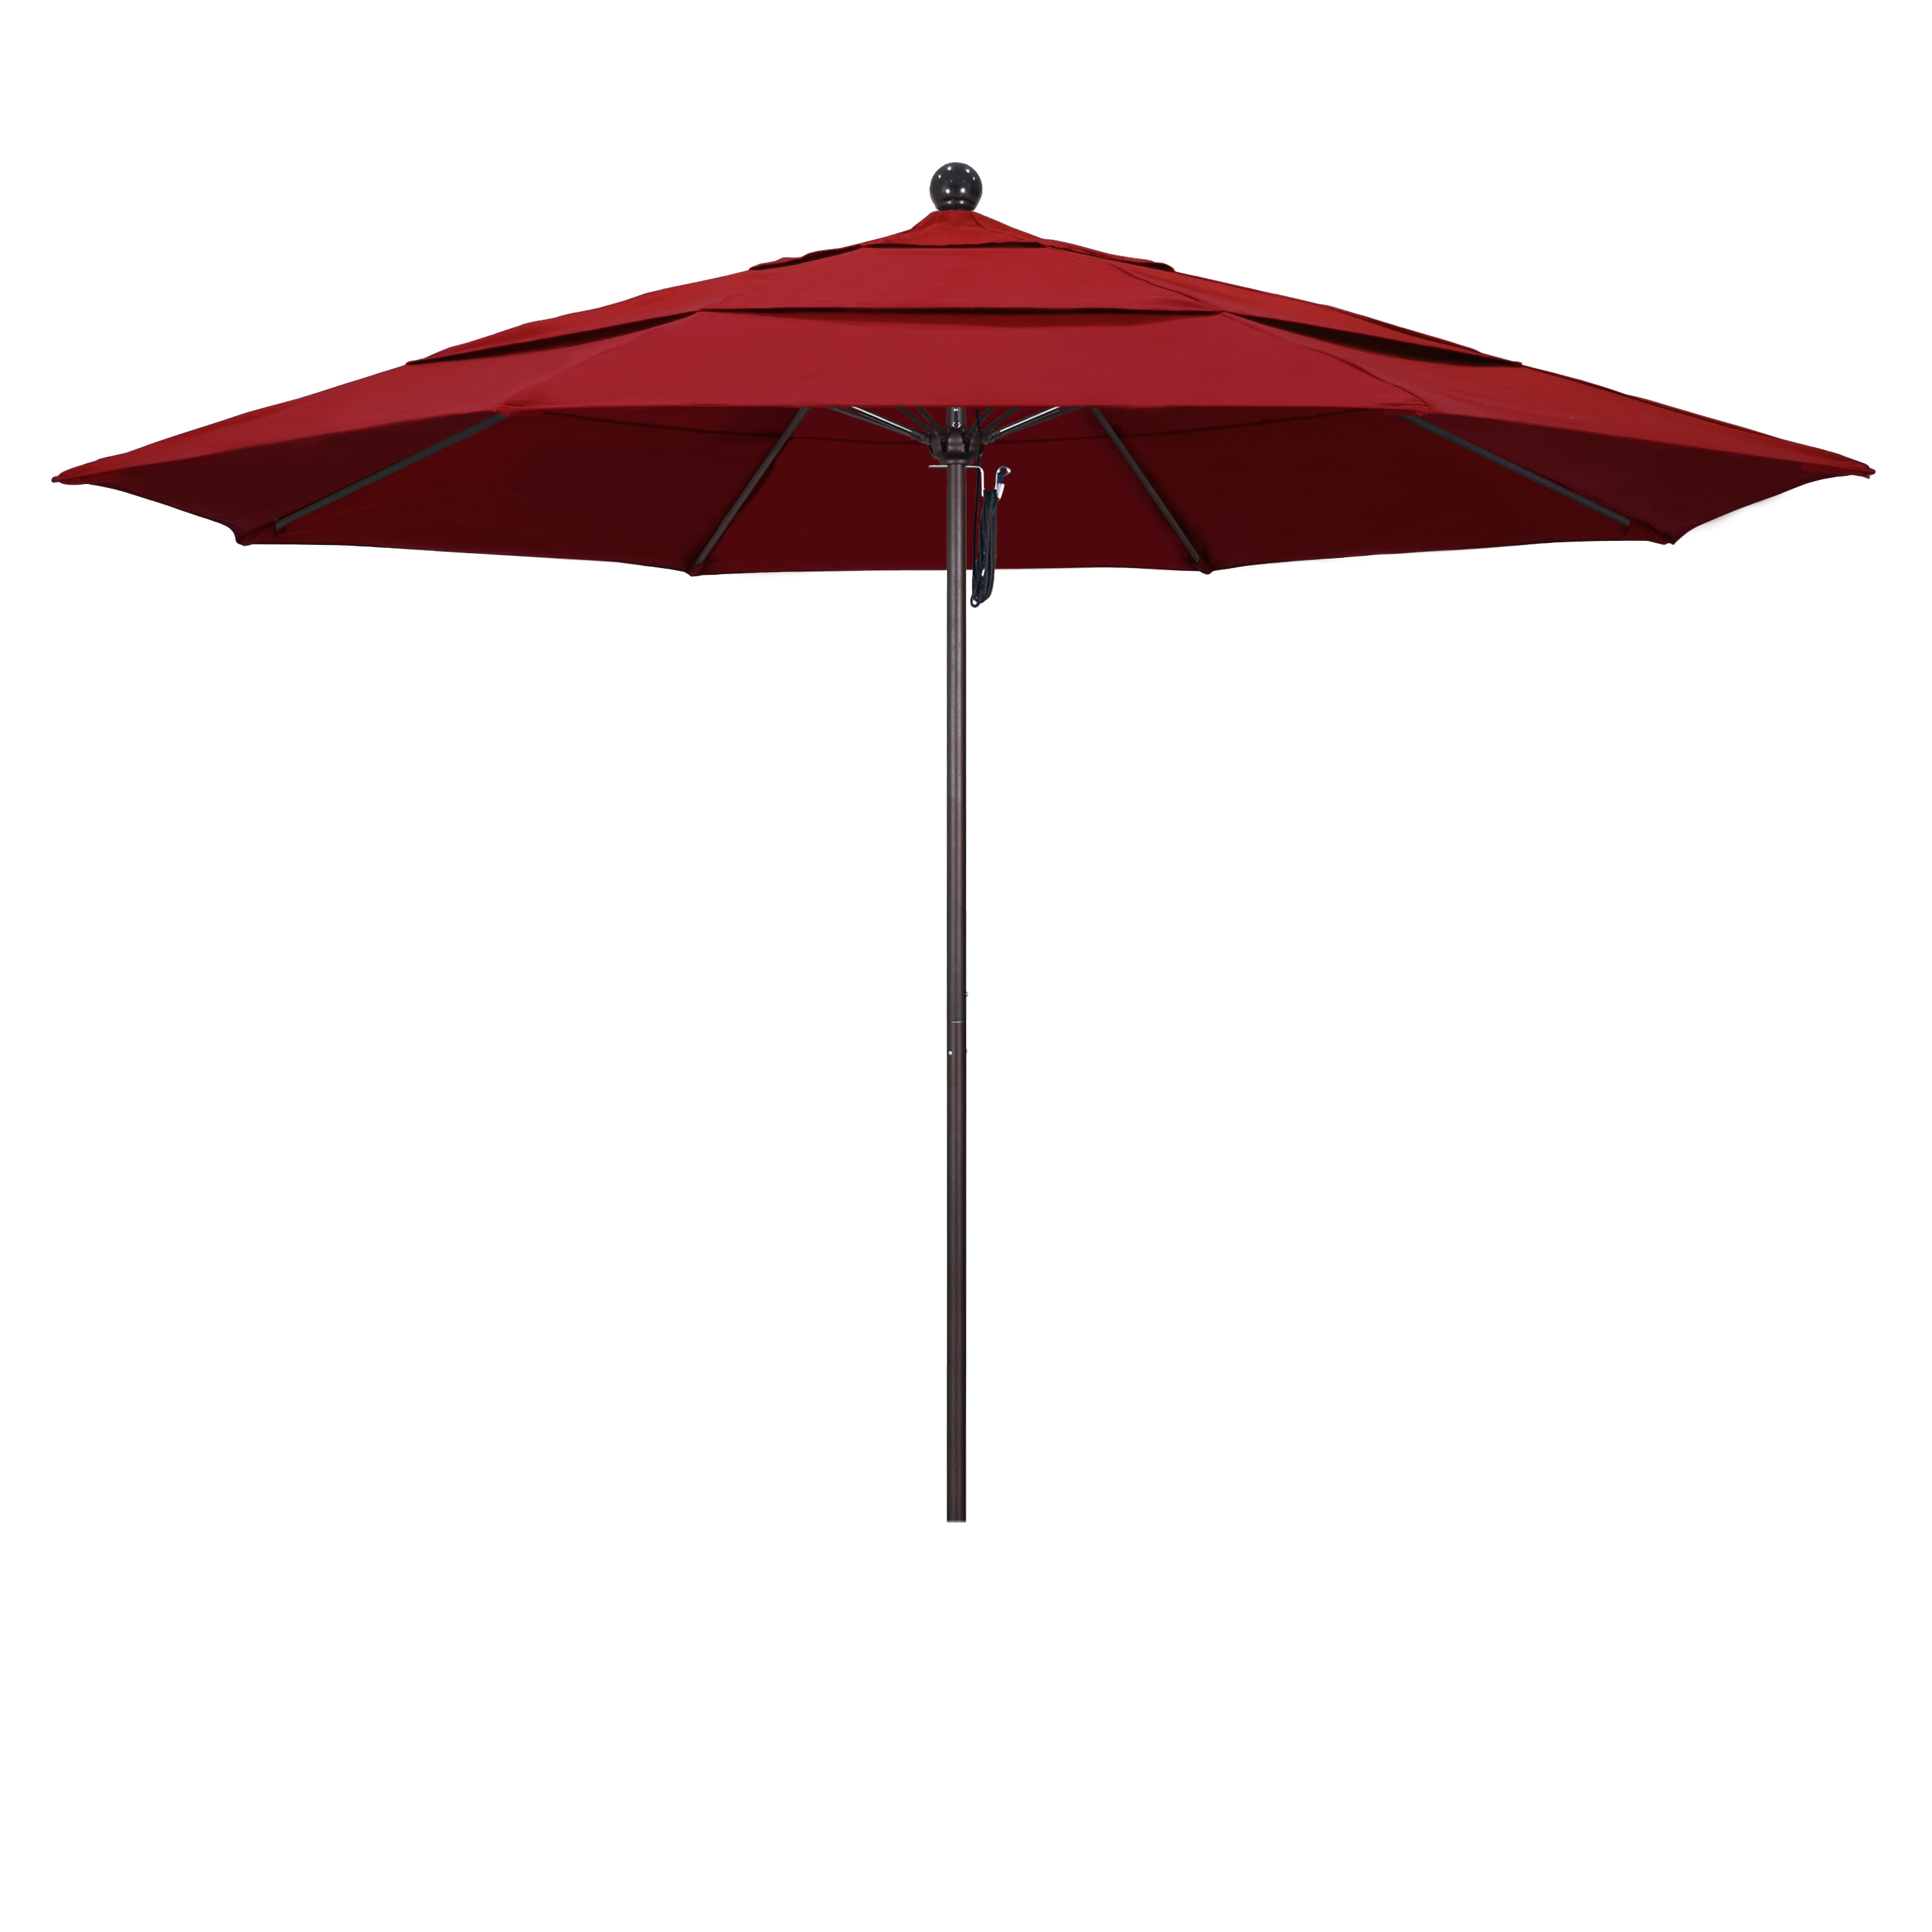 Picture of California Umbrella ALTO118117-SA03-DWV 11 ft. Fiberglass Pulley Open Double Vents Market Umbrella - Bronze and Pacifica-Red